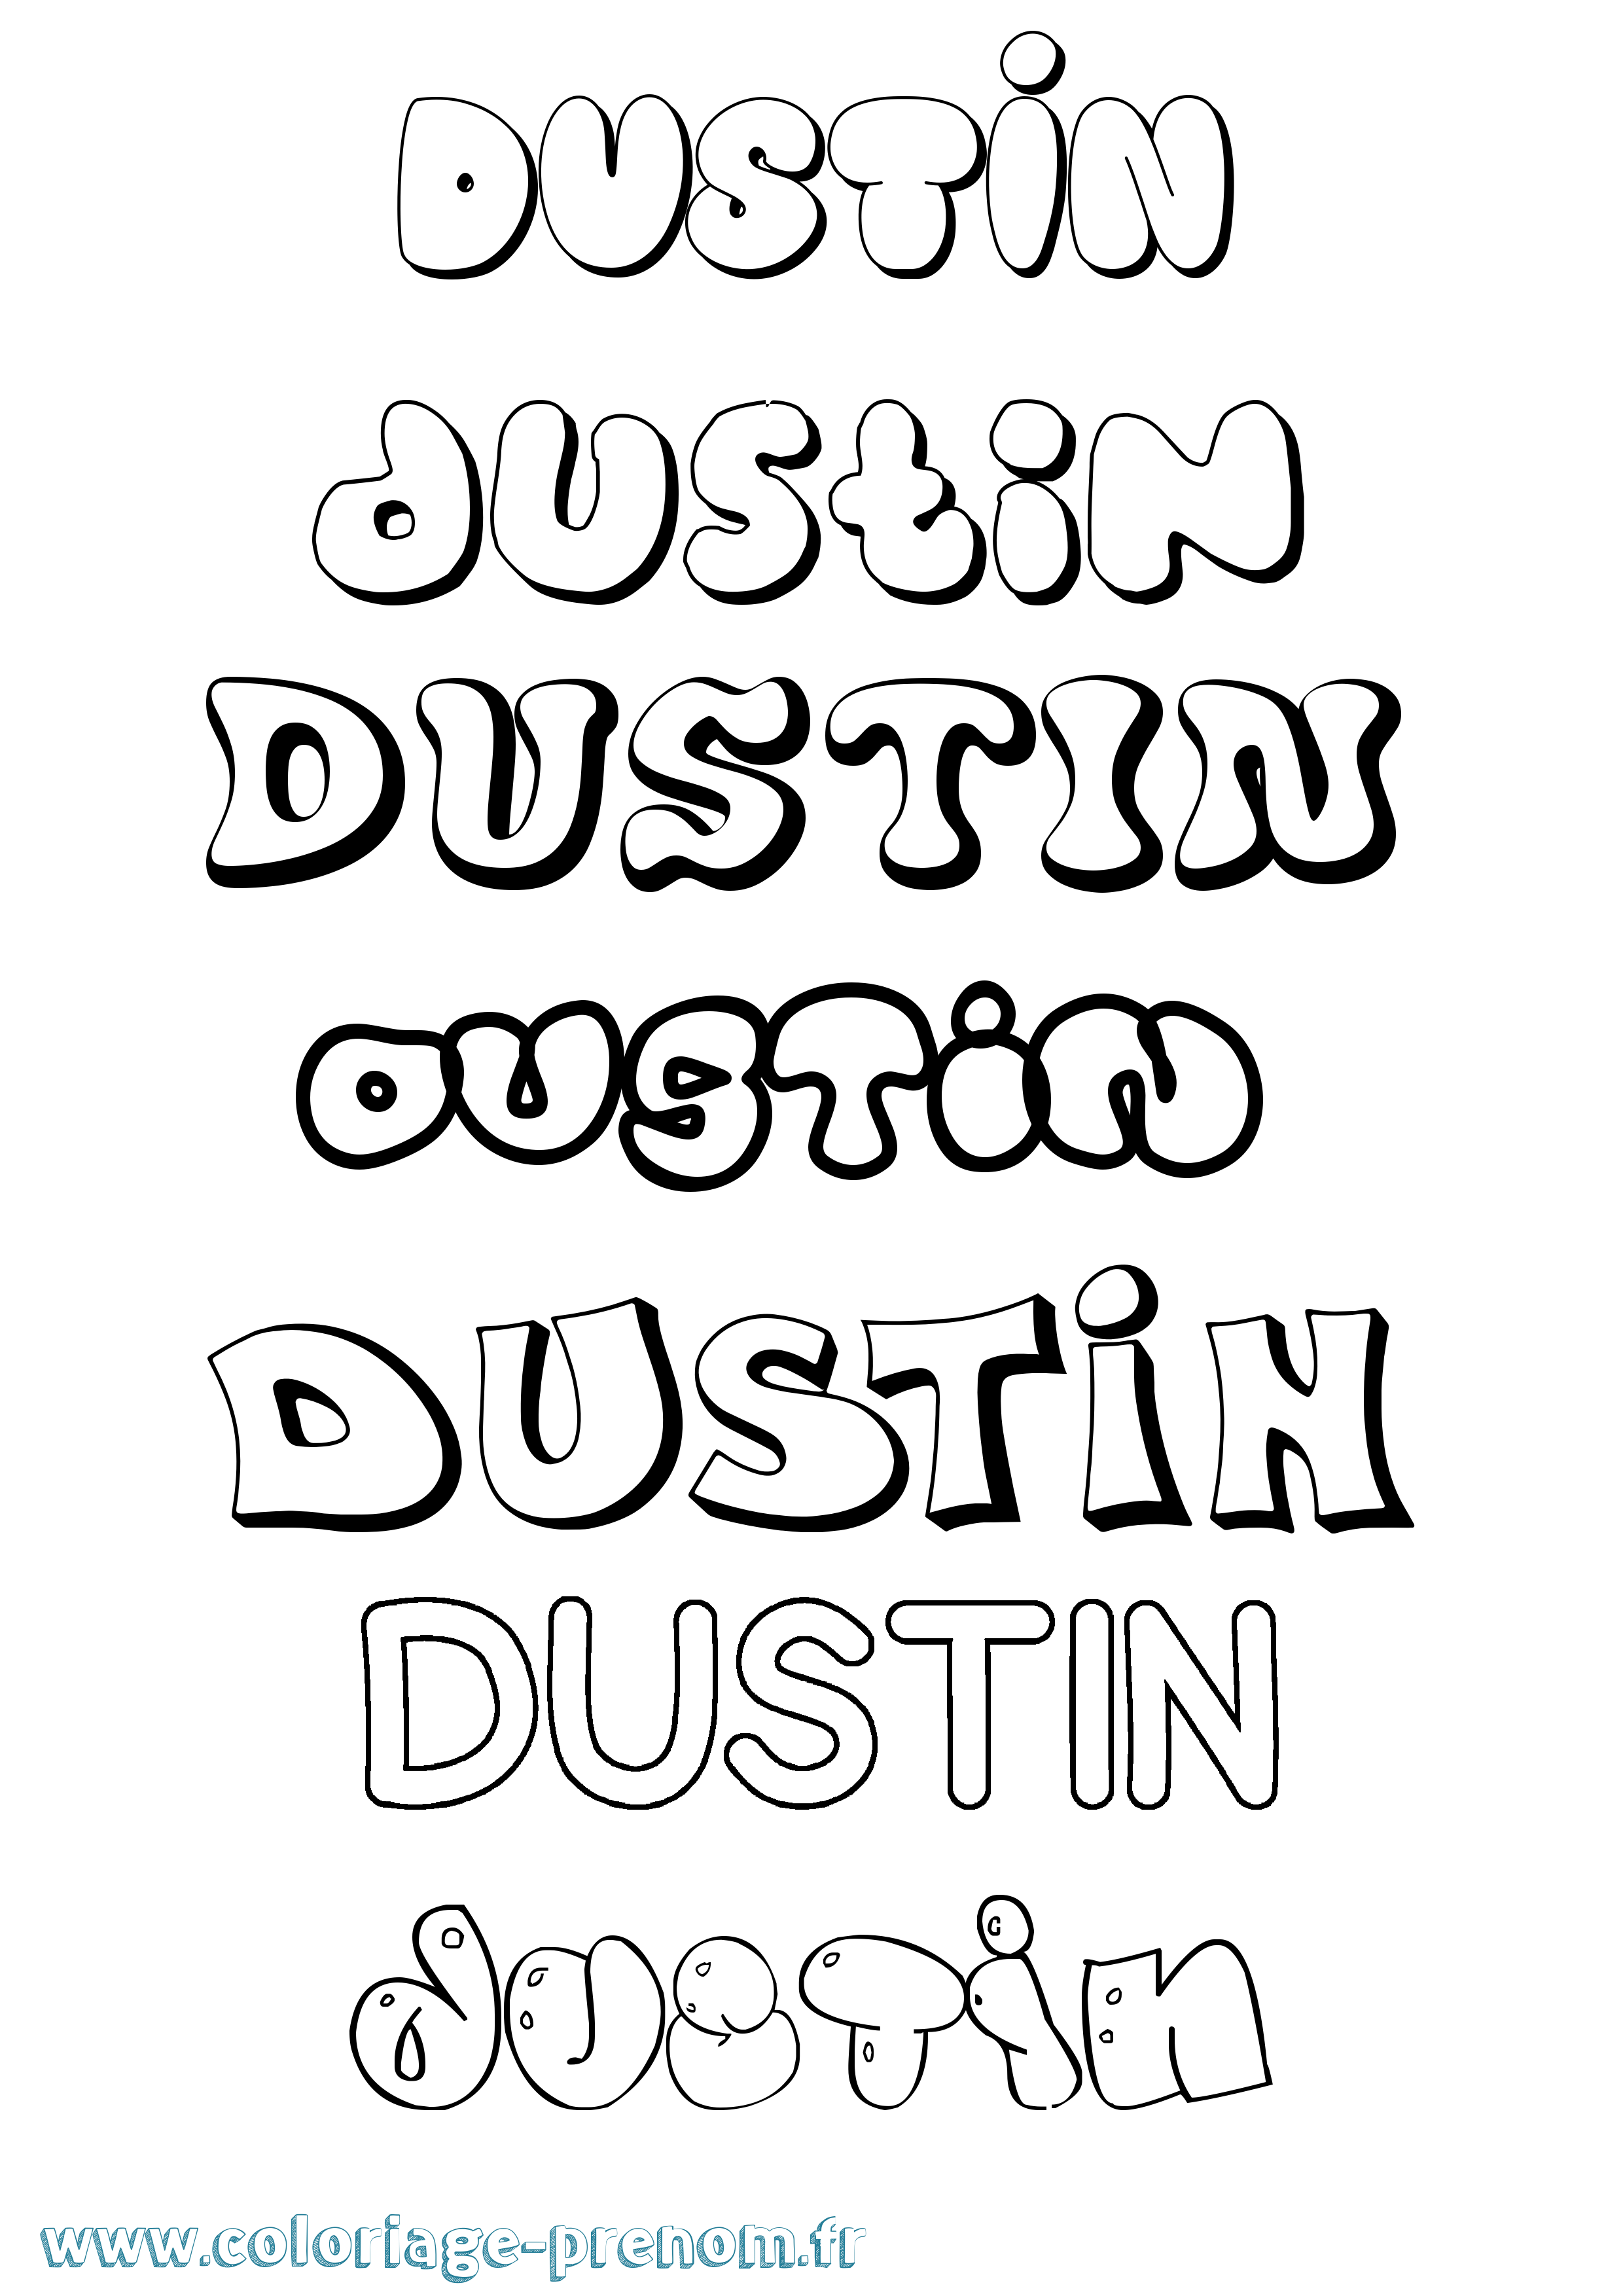 Coloriage prénom Dustin Bubble